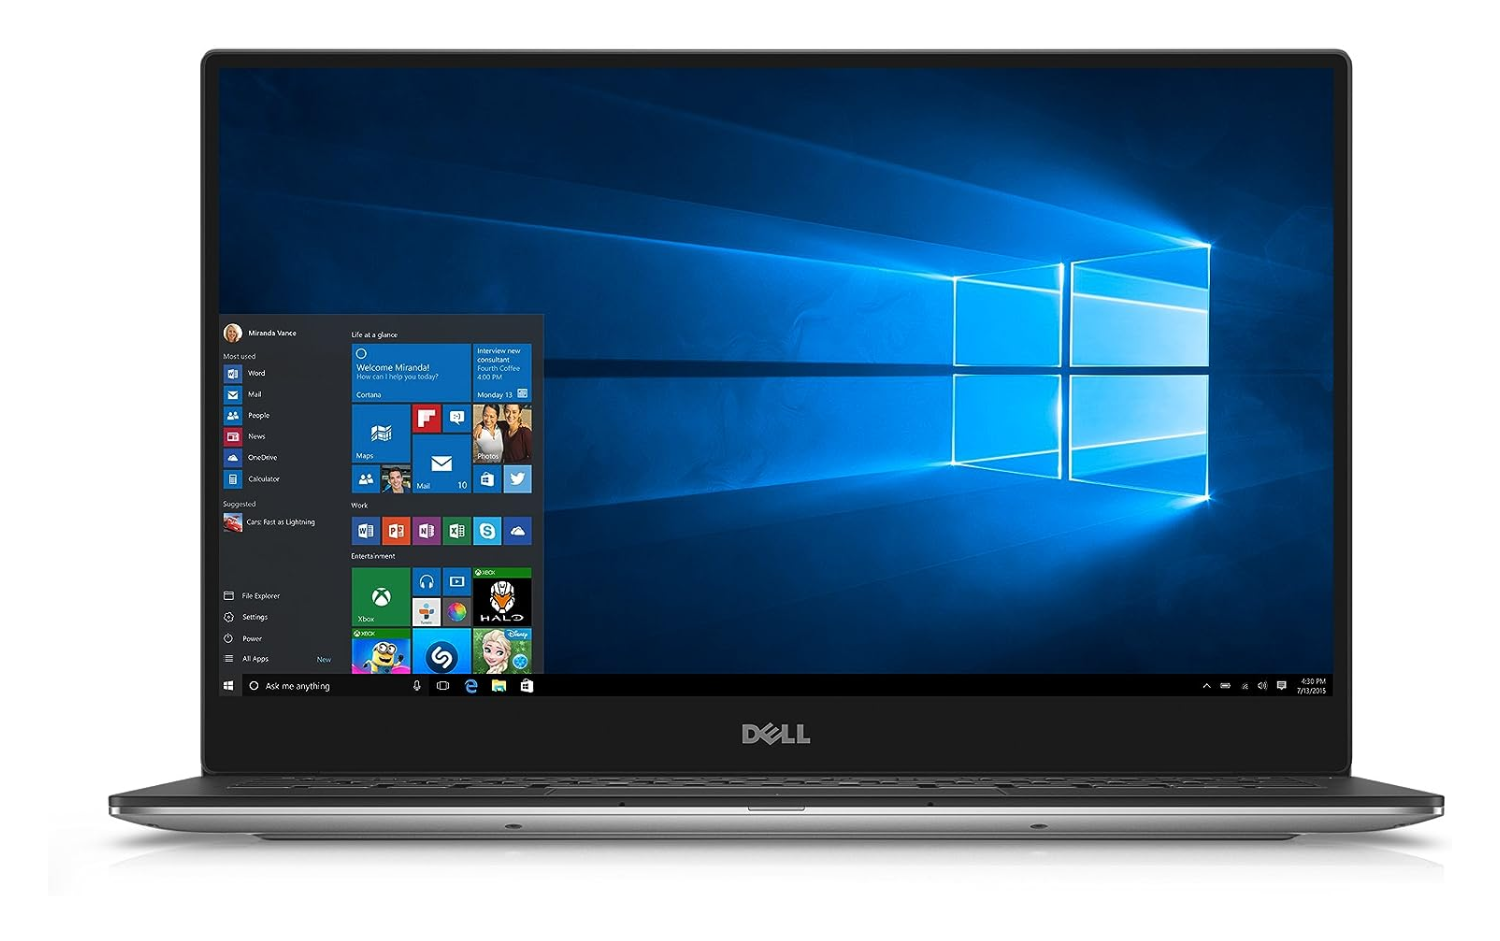 Dell XPS 9360 Intel Core i5-7th Gen 8GB RAM 256GB SSD Microsoft Windows 10 Home Touchscreen